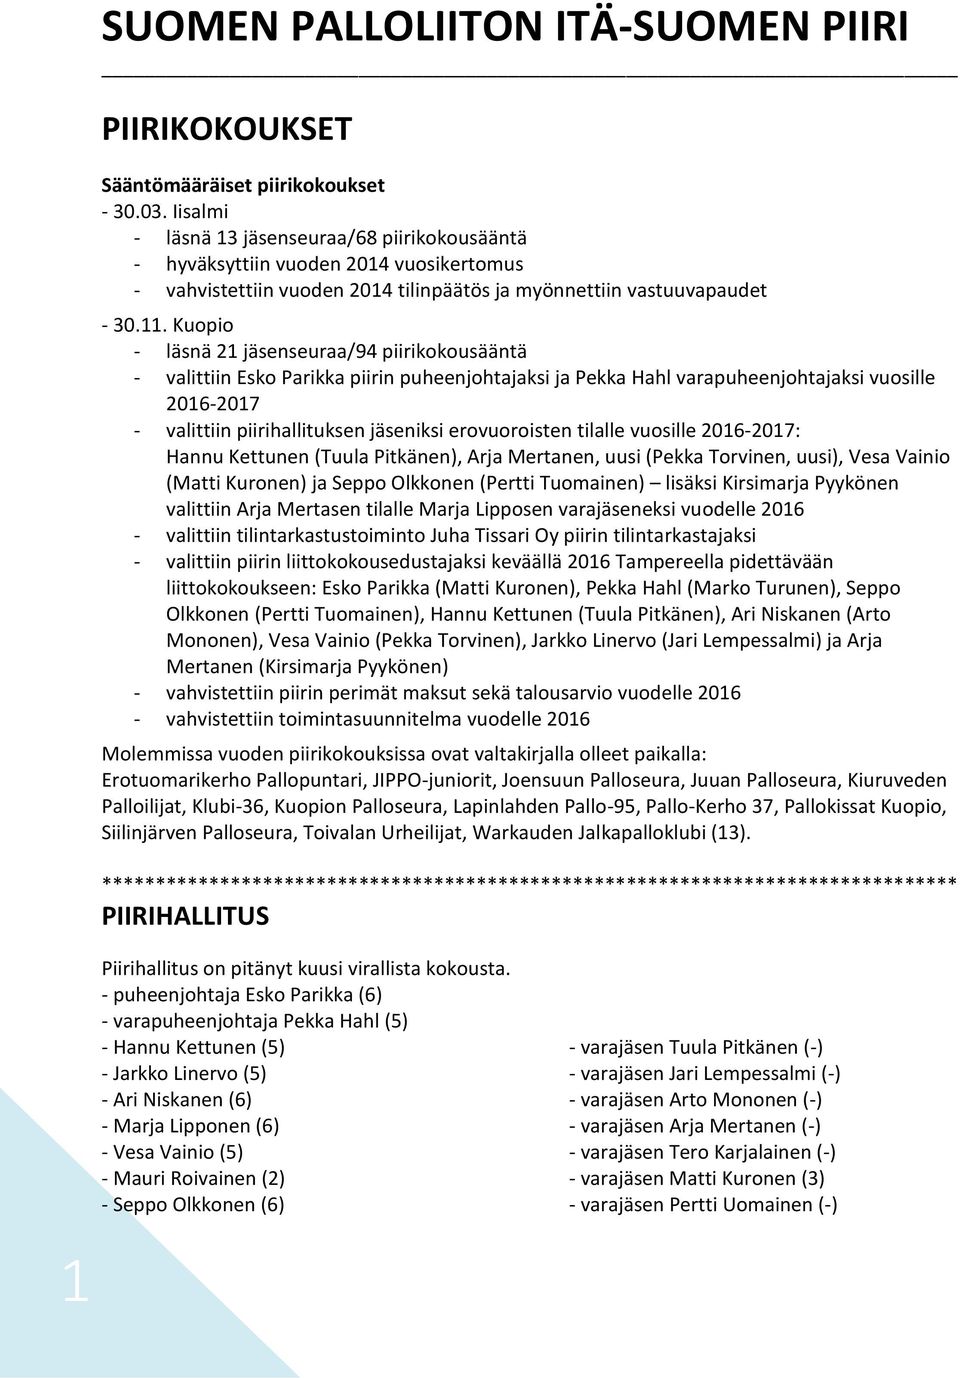 Kuopio - läsnä 21 jäsenseuraa/94 piirikokousääntä - valittiin Esko Parikka piirin puheenjohtajaksi ja Pekka Hahl varapuheenjohtajaksi vuosille 2016-2017 - valittiin piirihallituksen jäseniksi